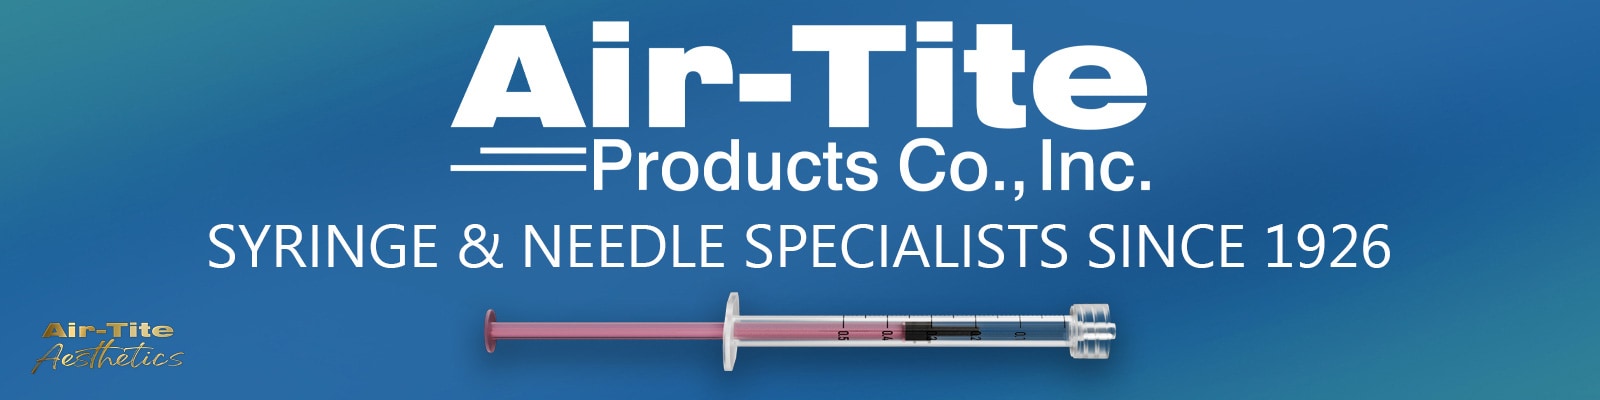 Air-Tite Products - Henry Schein